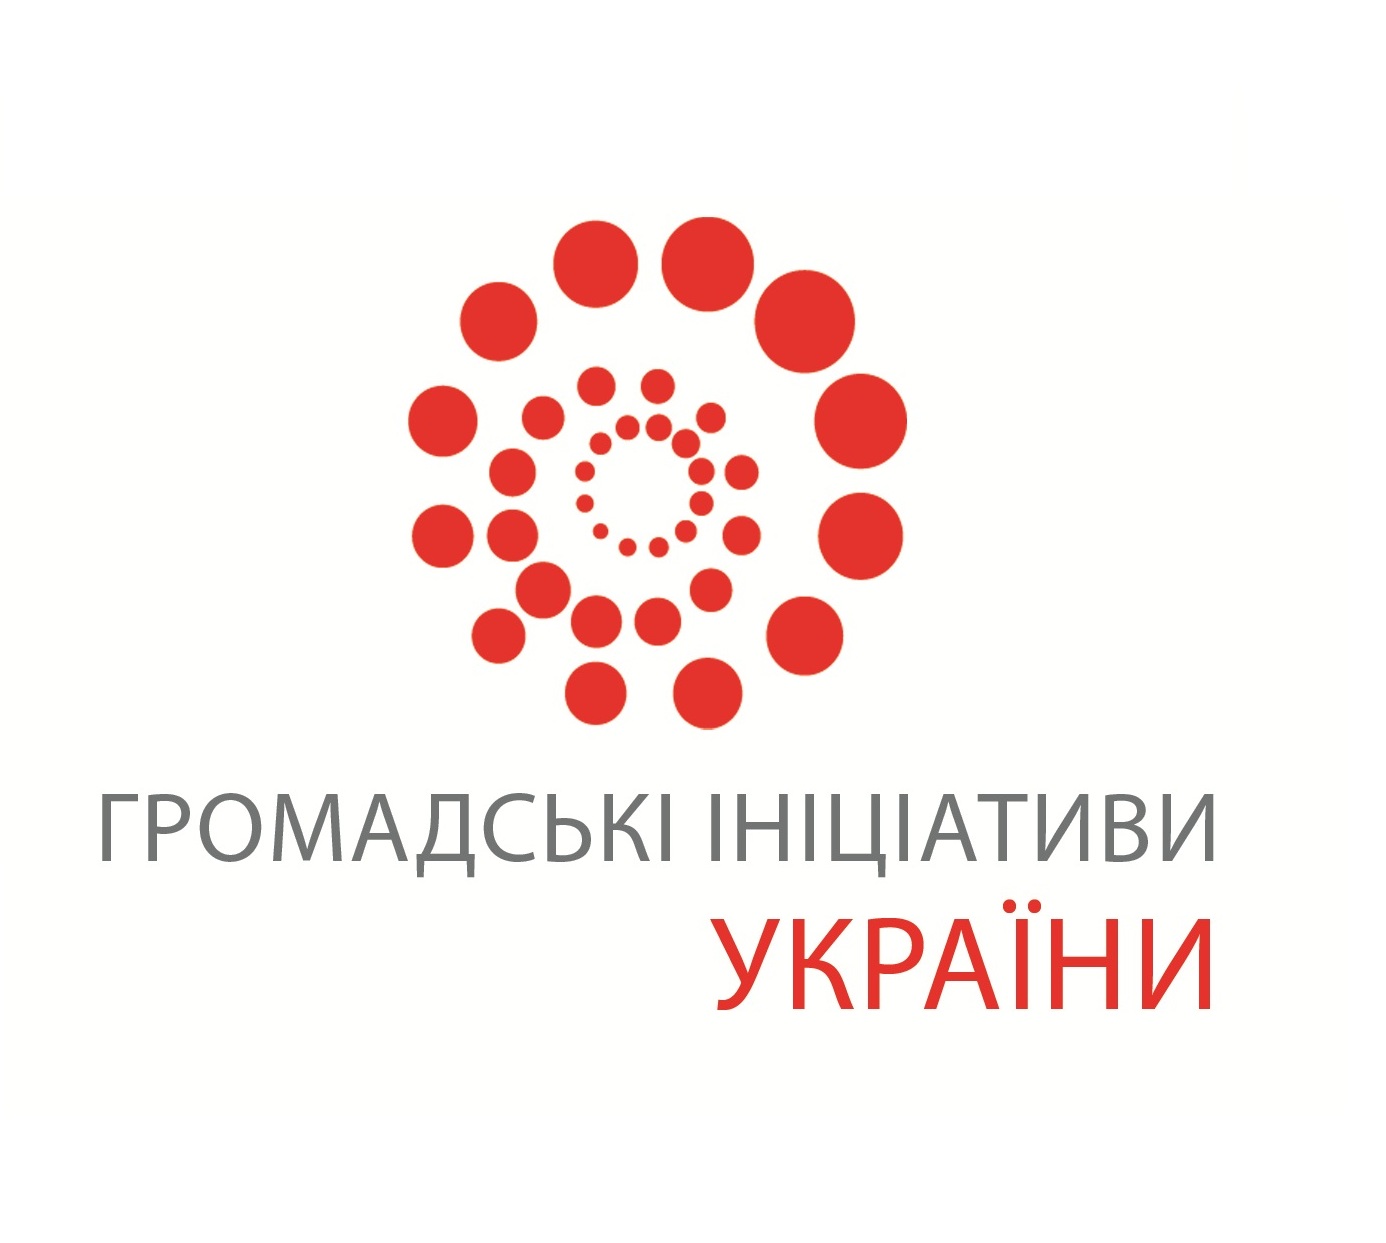 Нова сторінка “Громадські ініціативи України”